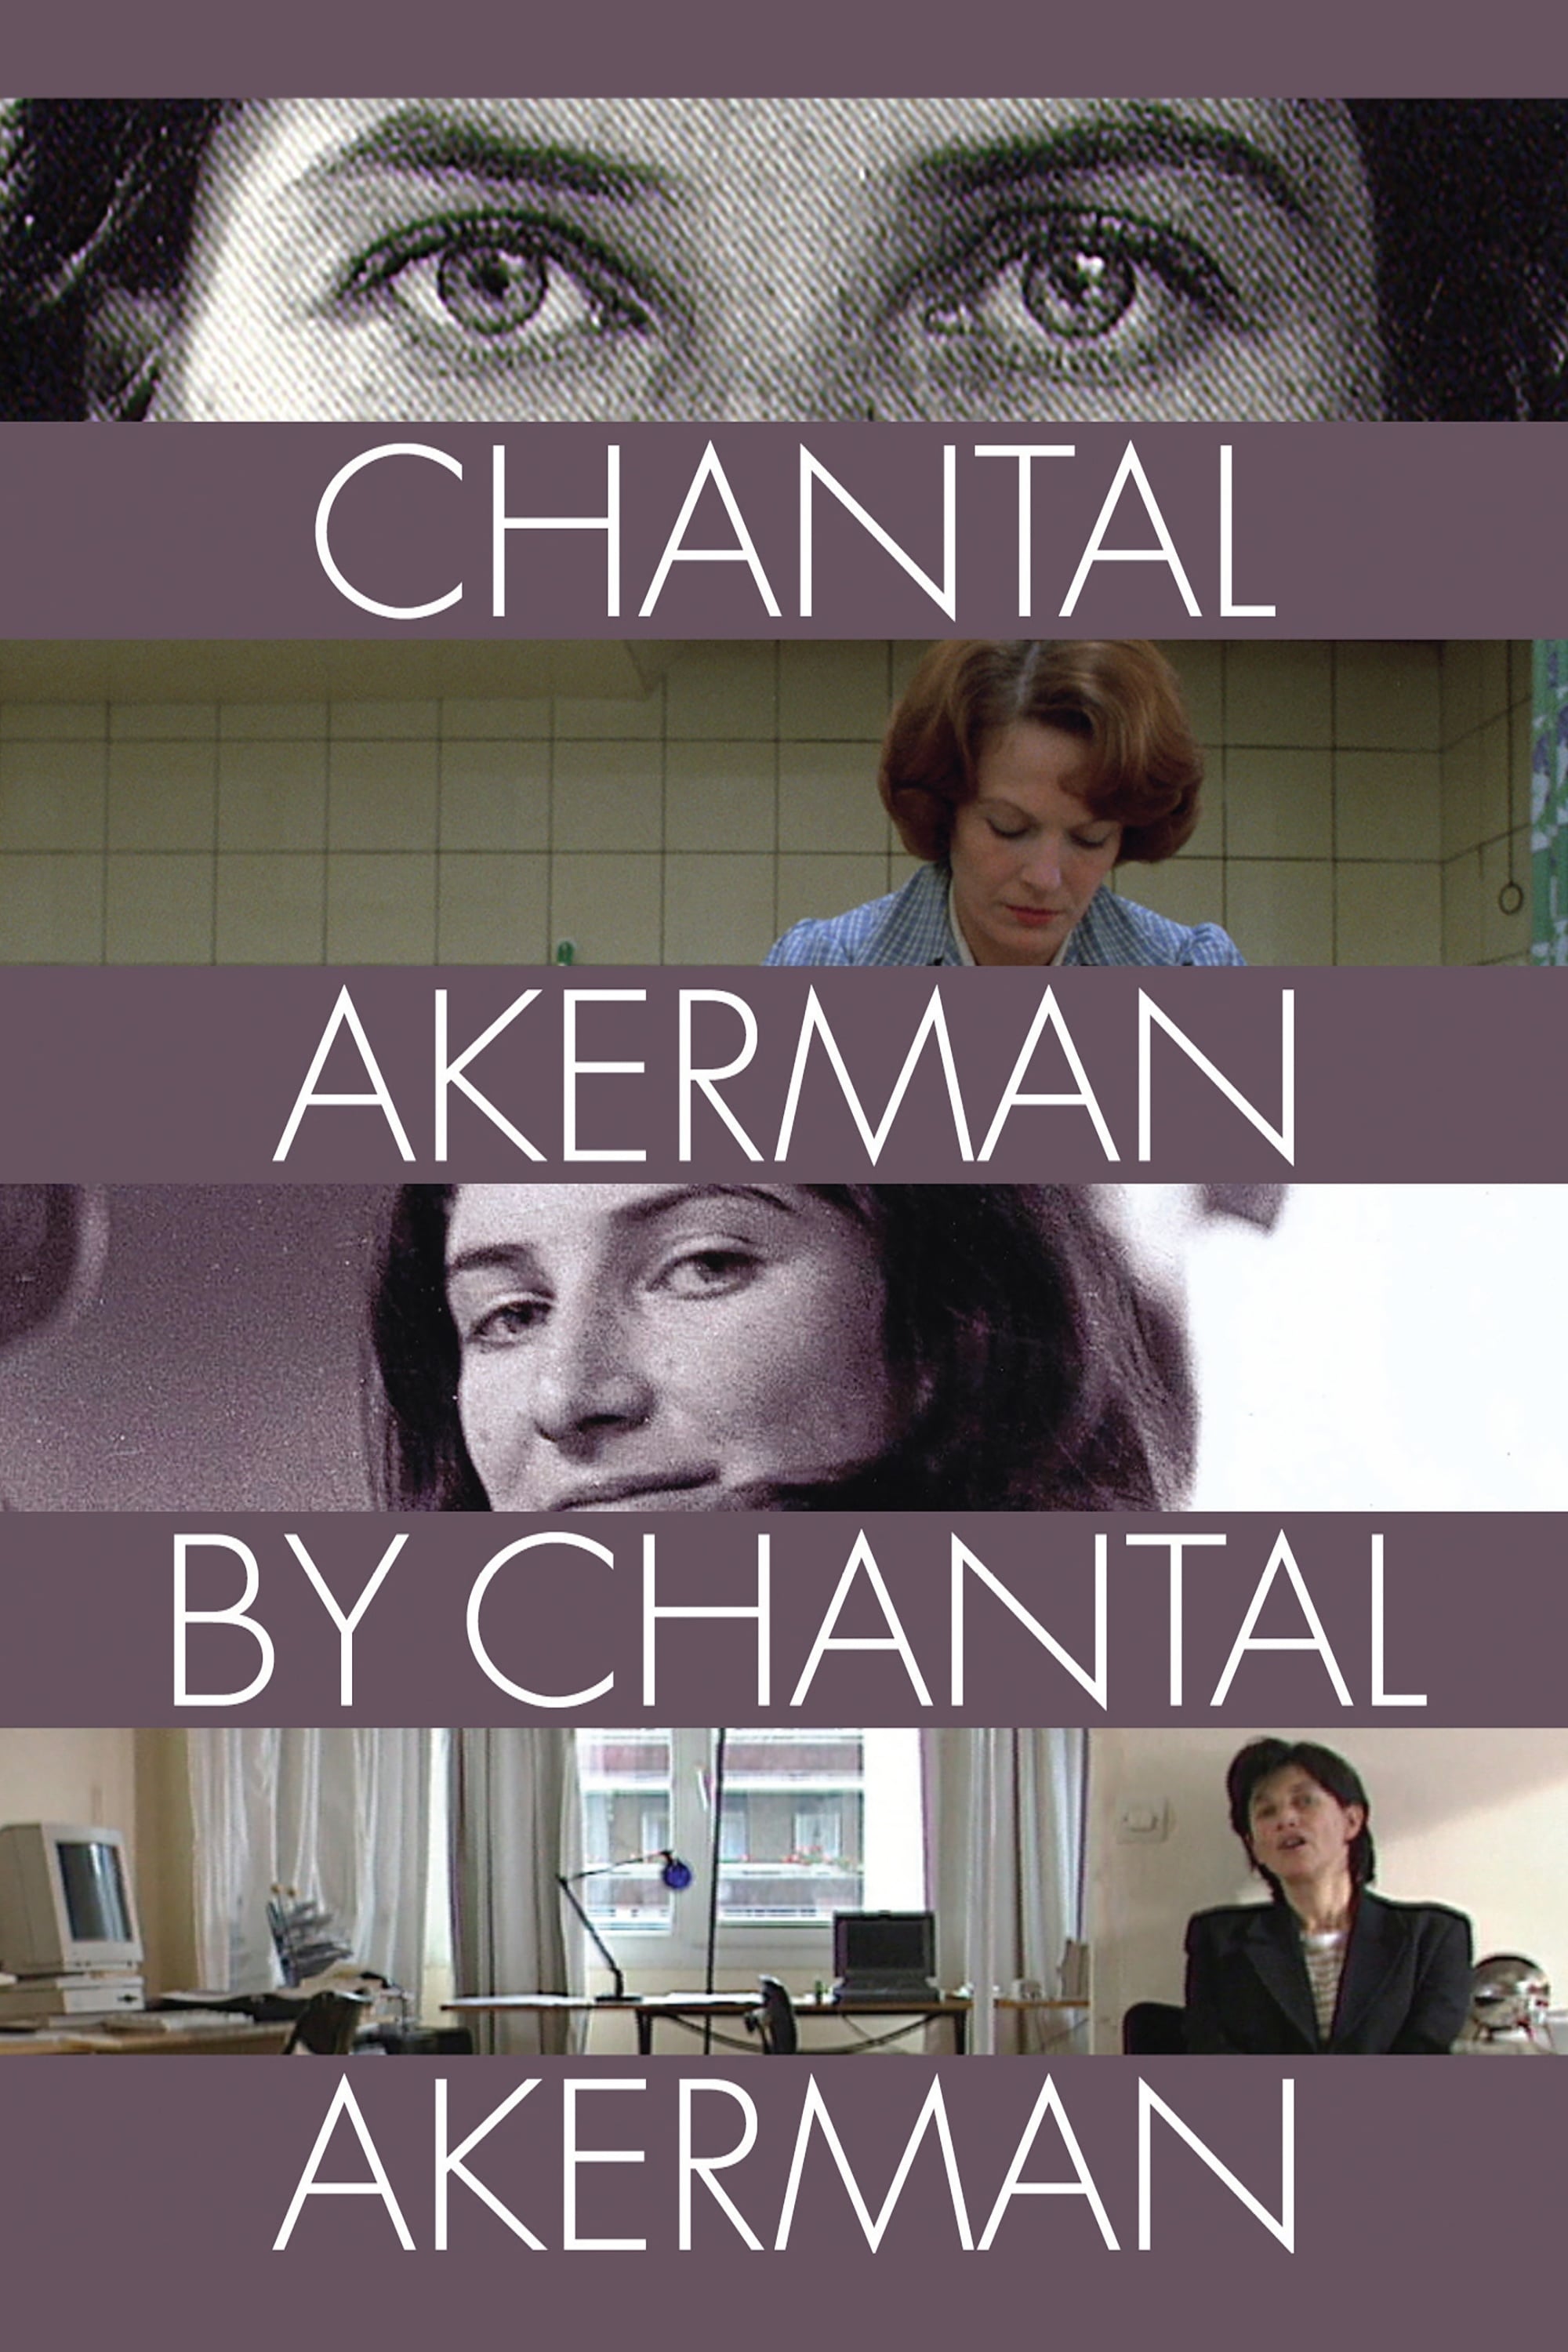 Chantal Akerman by Chantal Akerman (1997)